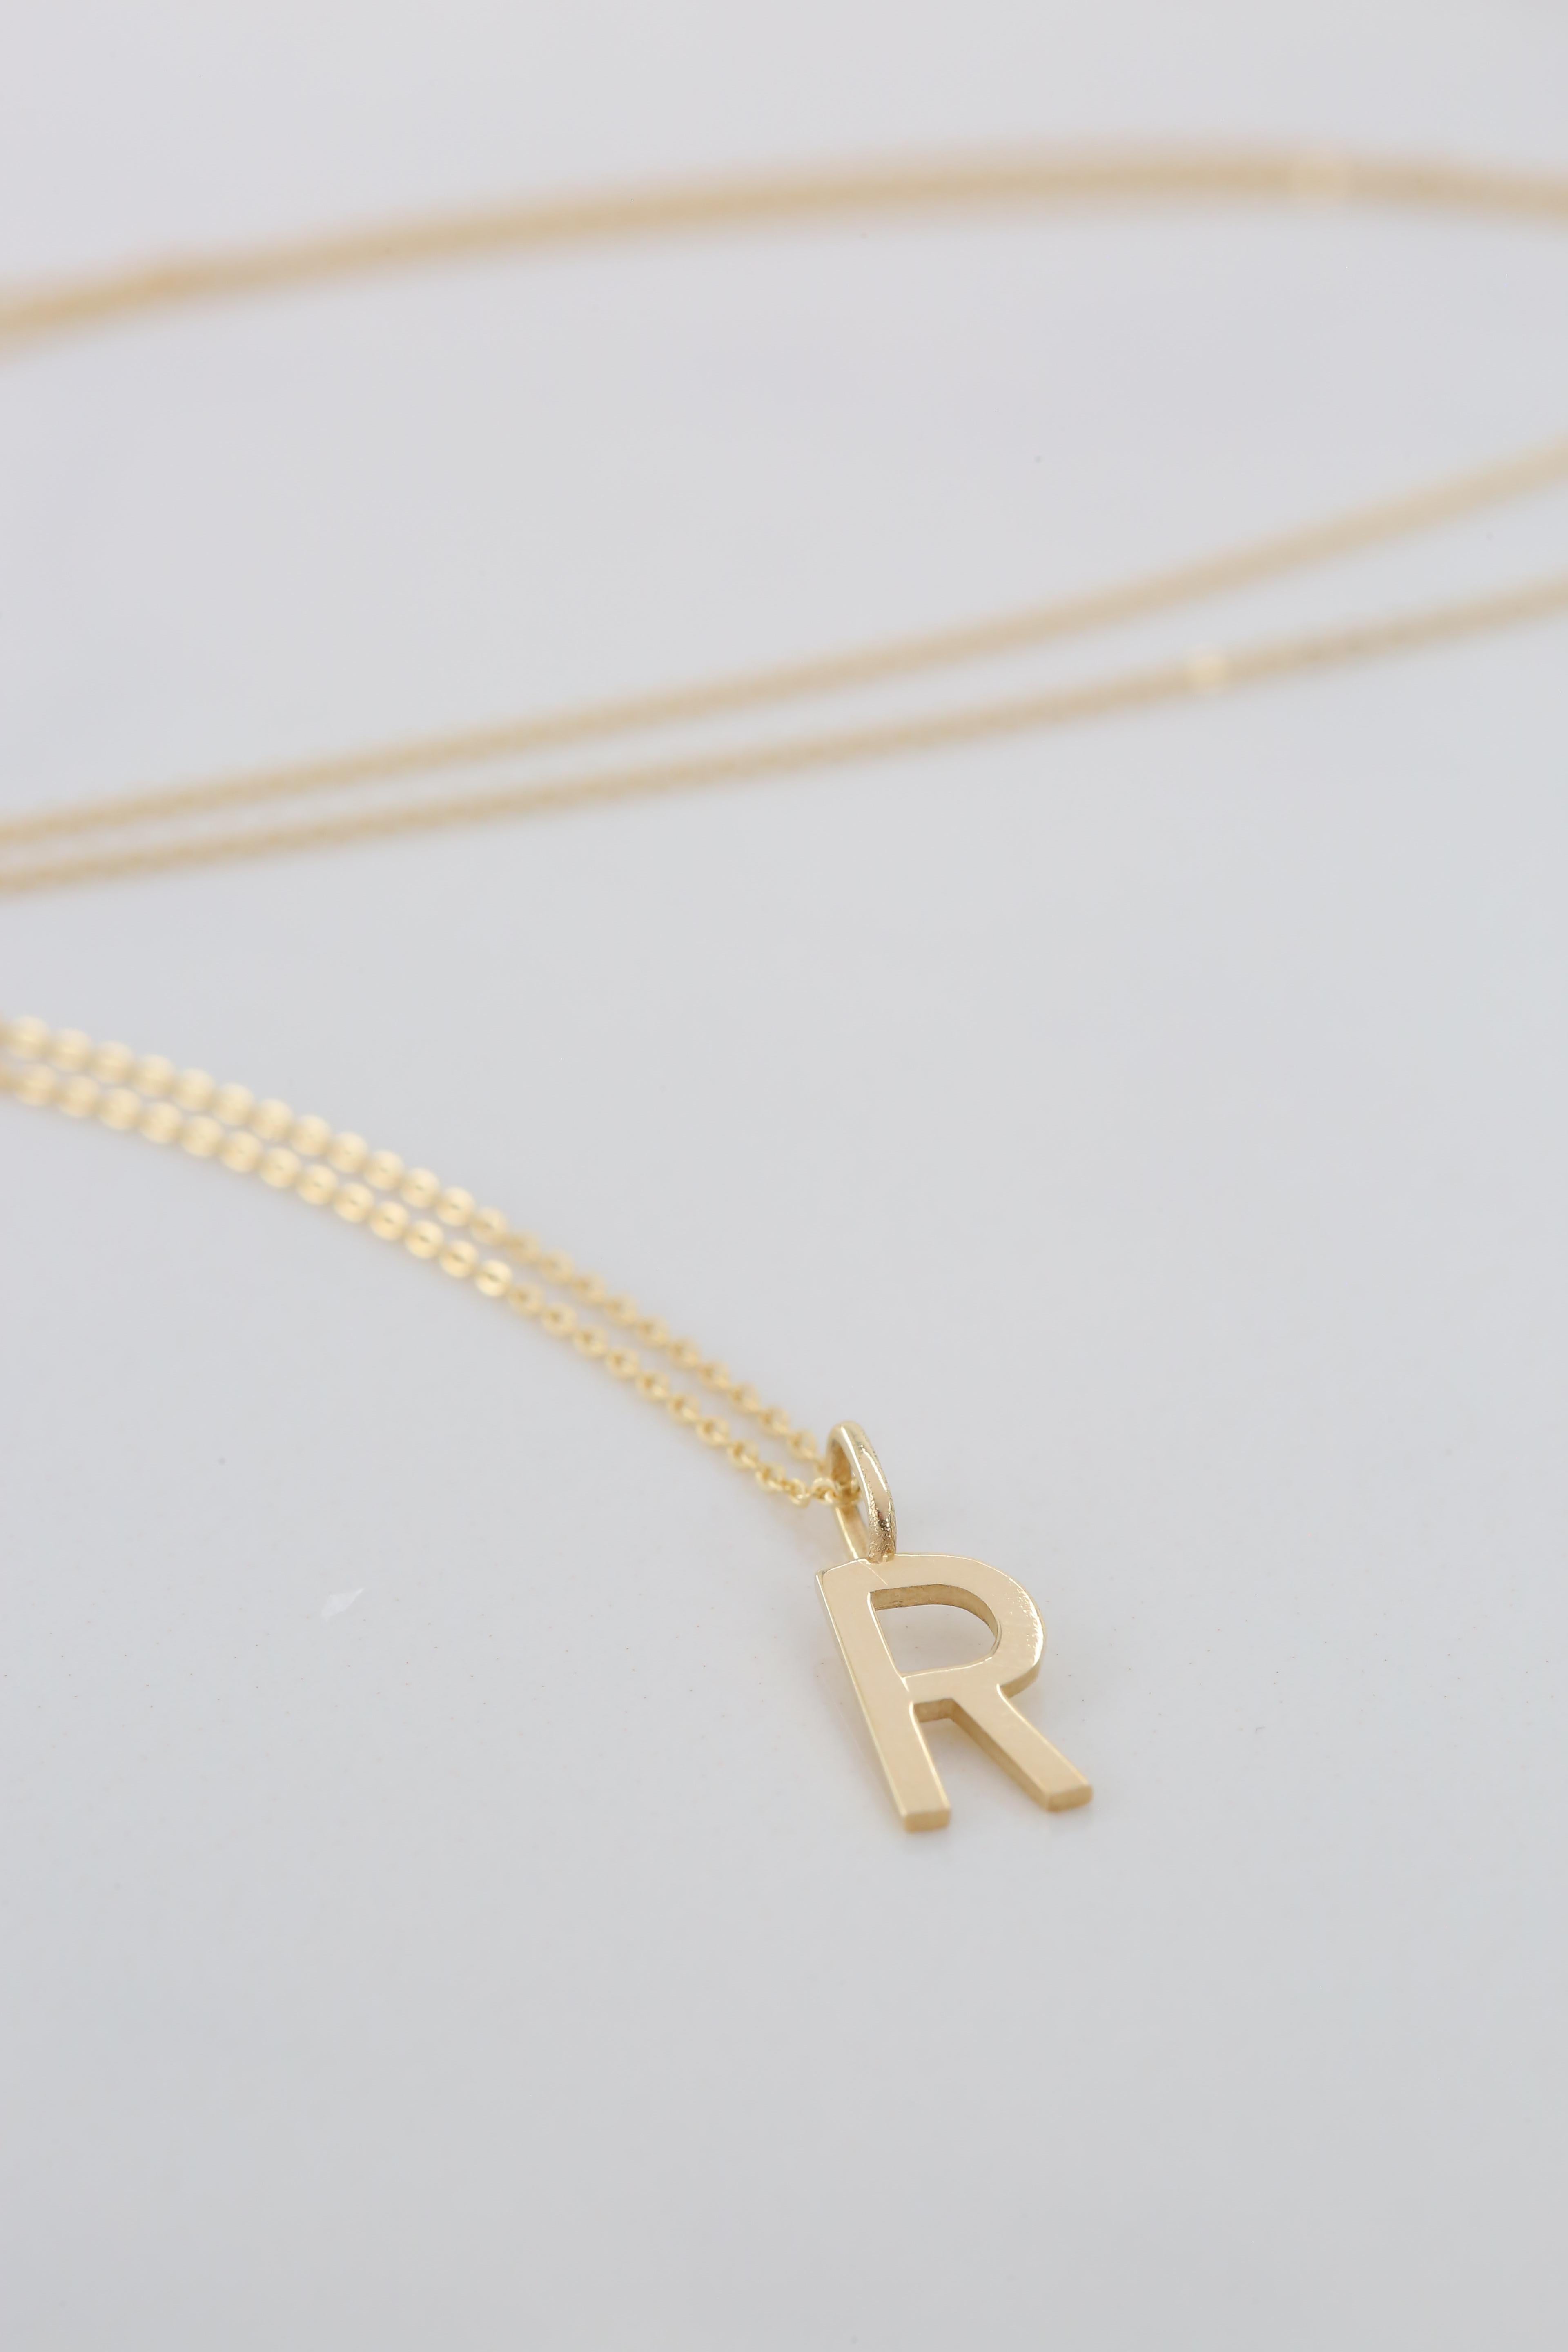 Modern 14k Gold Necklaces, Letter Necklace Models, Letter R Gold Necklace-Gift Necklace For Sale